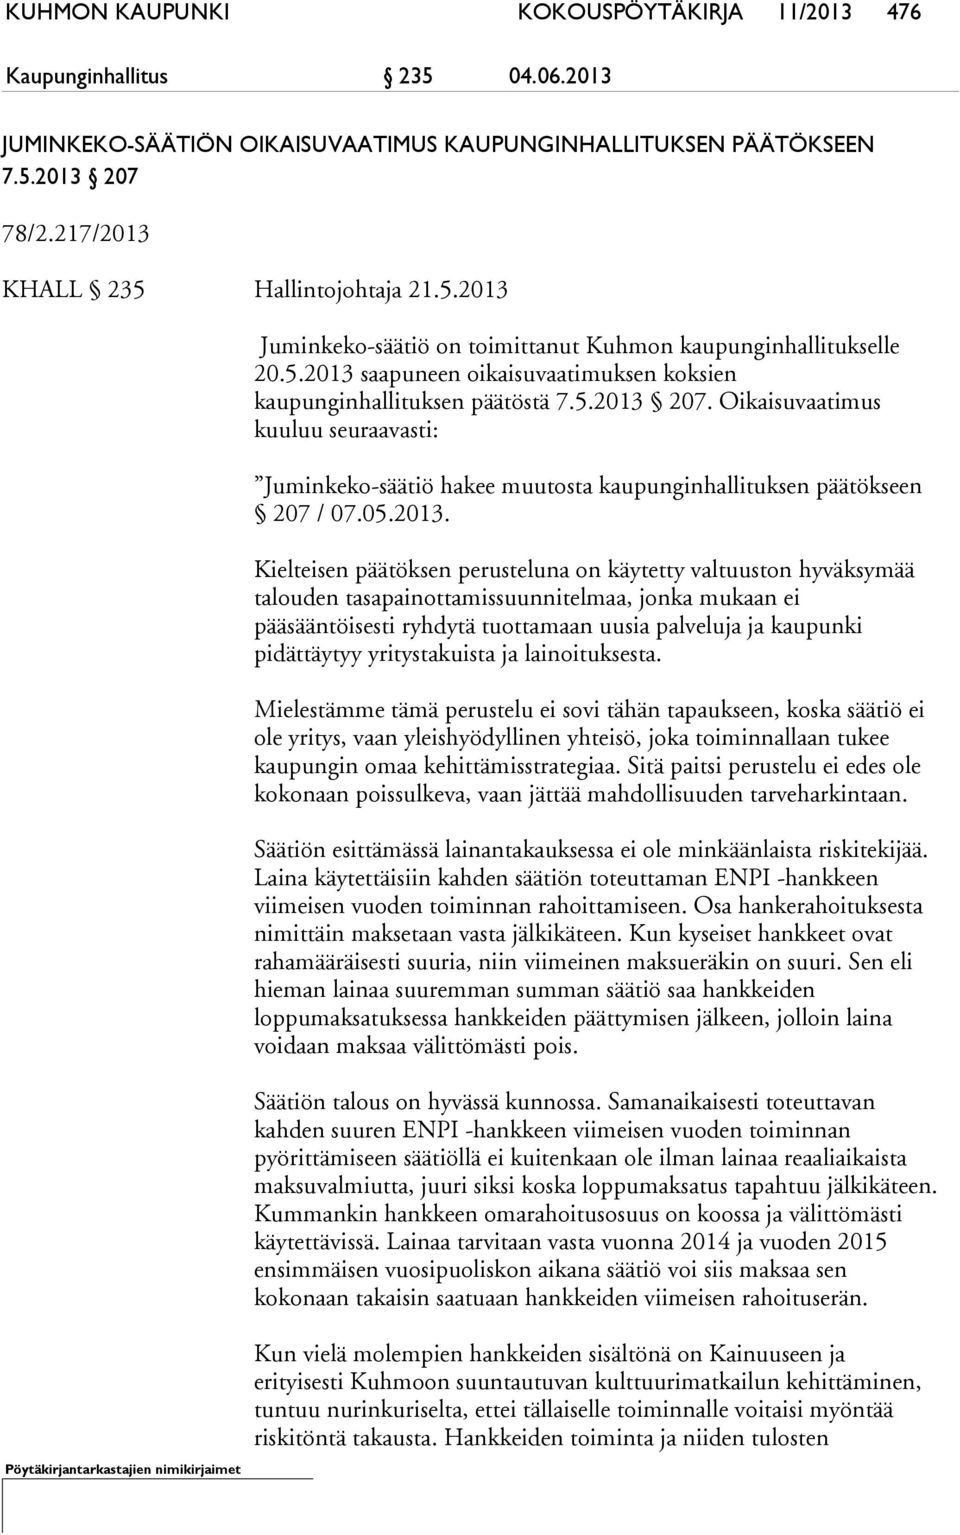 Oikaisuvaatimus kuuluu seuraavasti: Juminkeko-säätiö hakee muutosta kaupunginhallituksen päätökseen 207 / 07.05.2013.